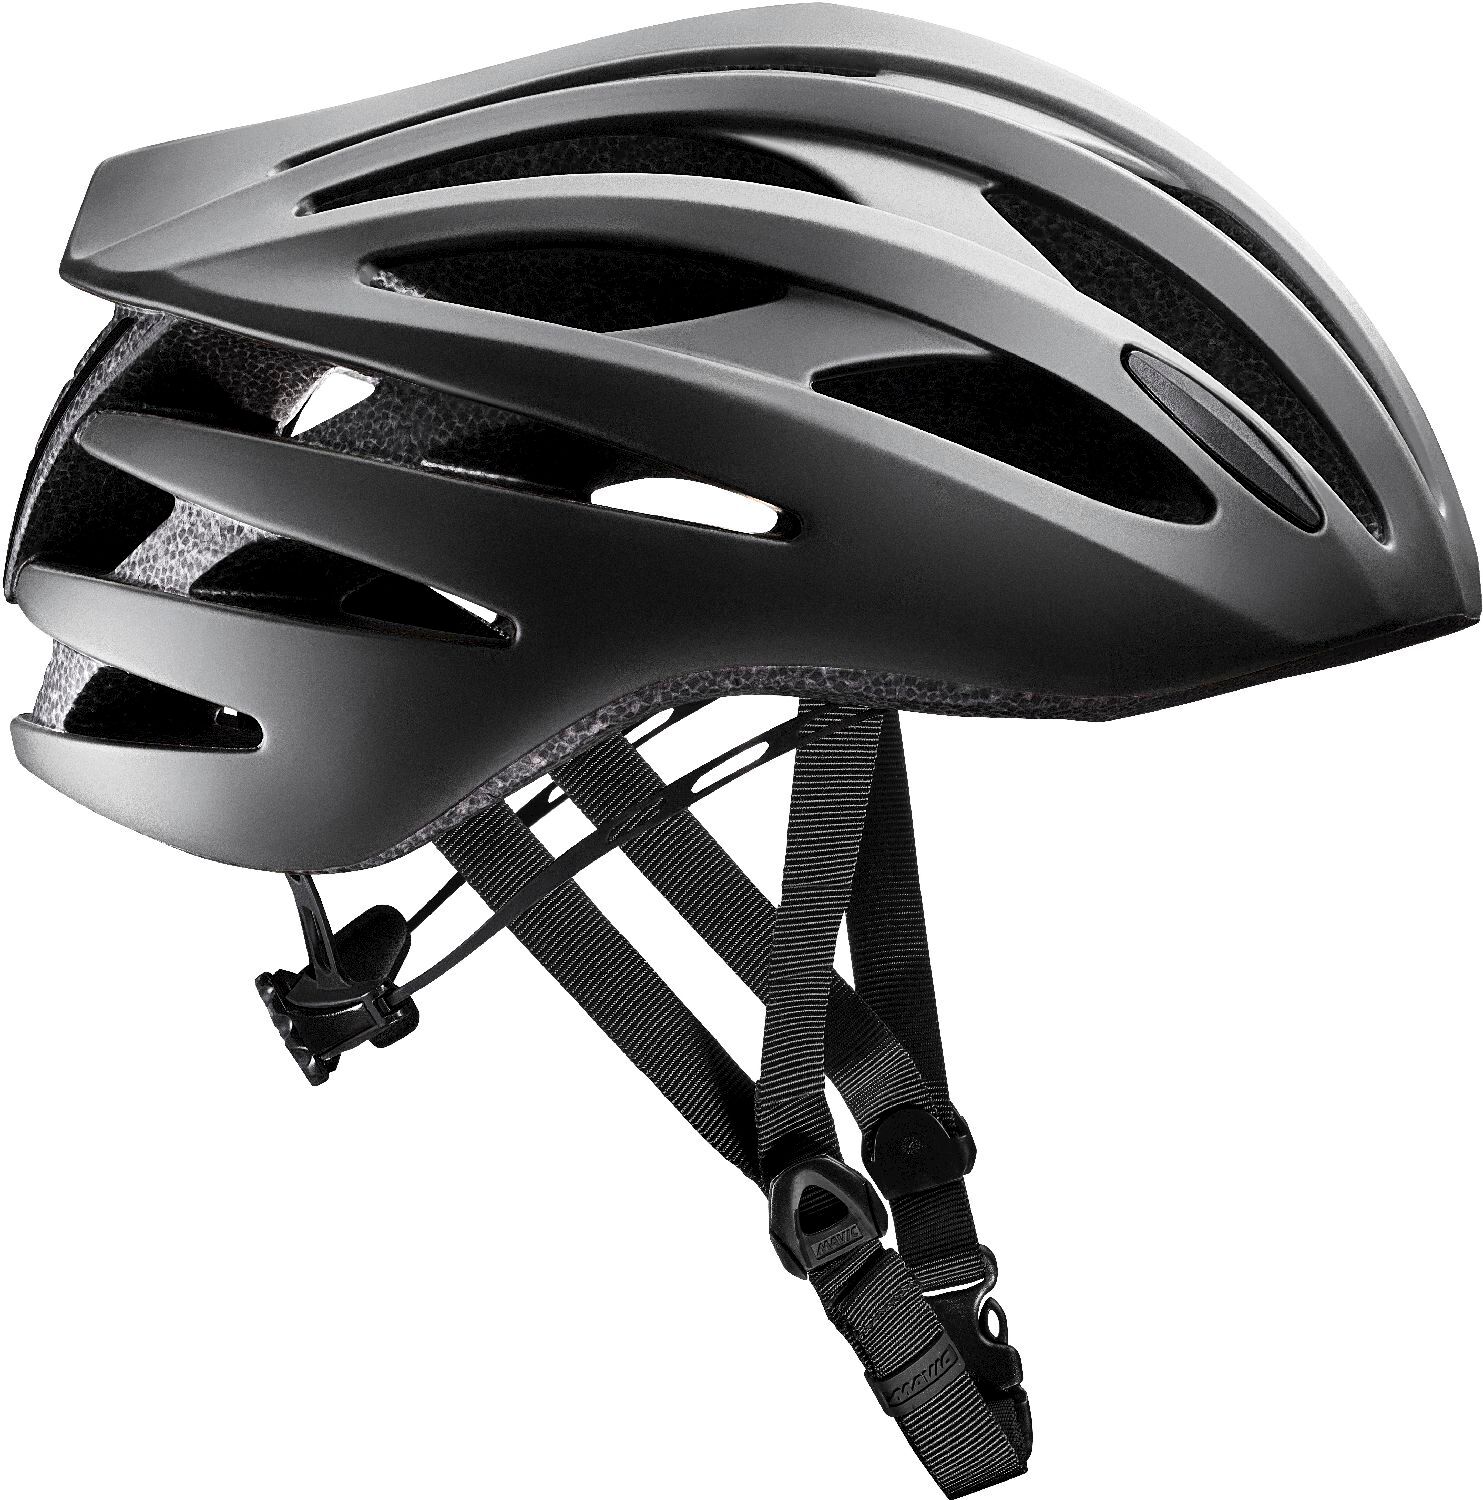 Mavic Aksium Elite - Road bike helmet